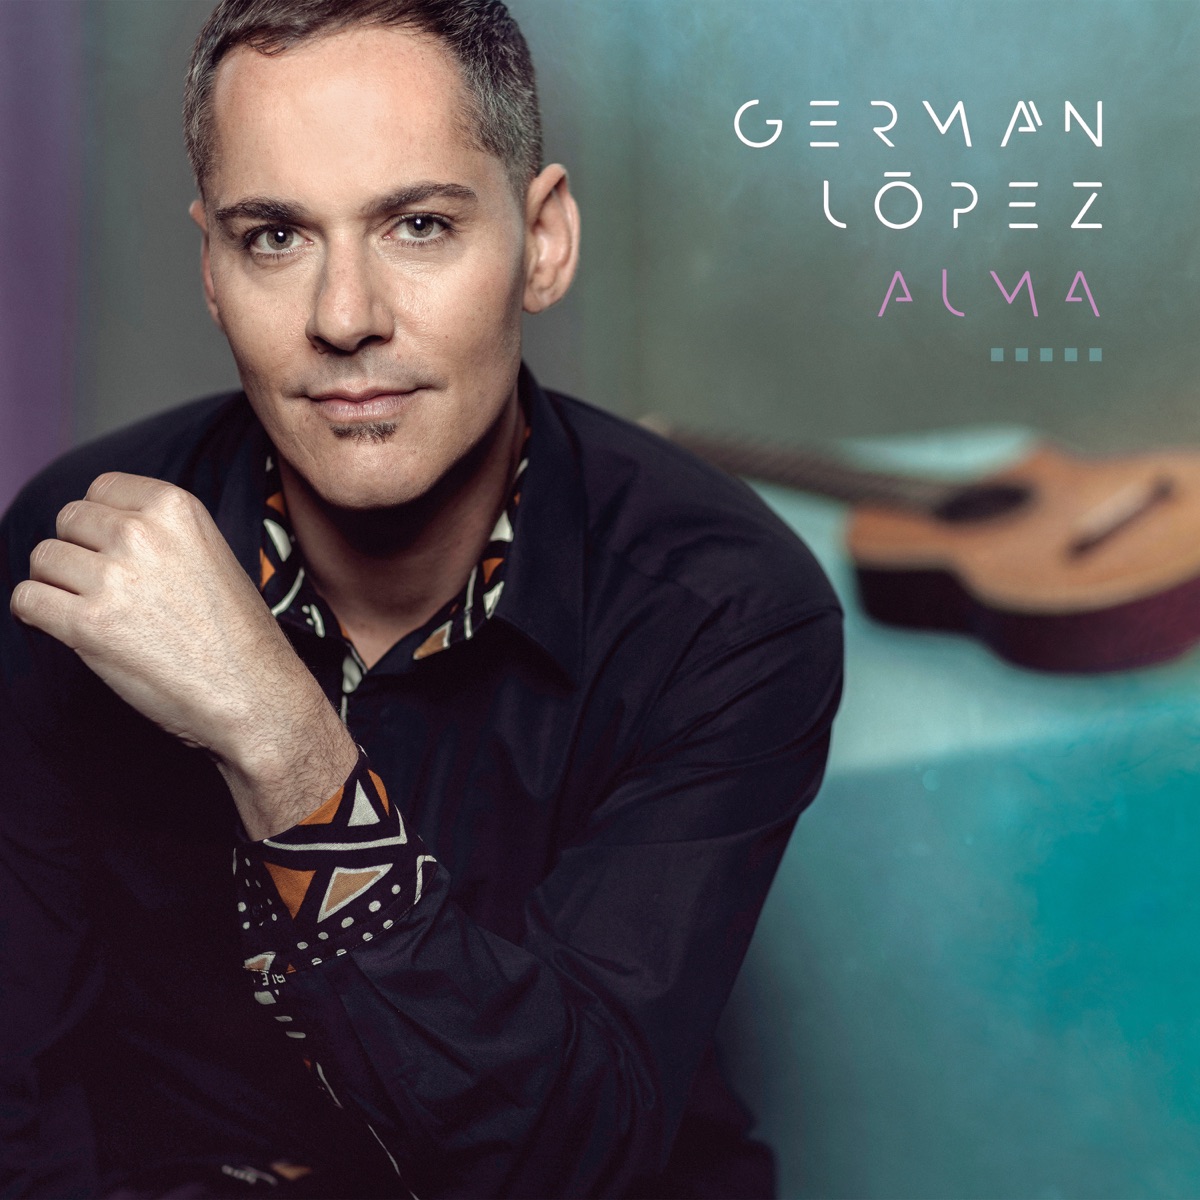 Esfuérzate y Se Valiente, Vol. 2 - Album by Germán López - Apple Music